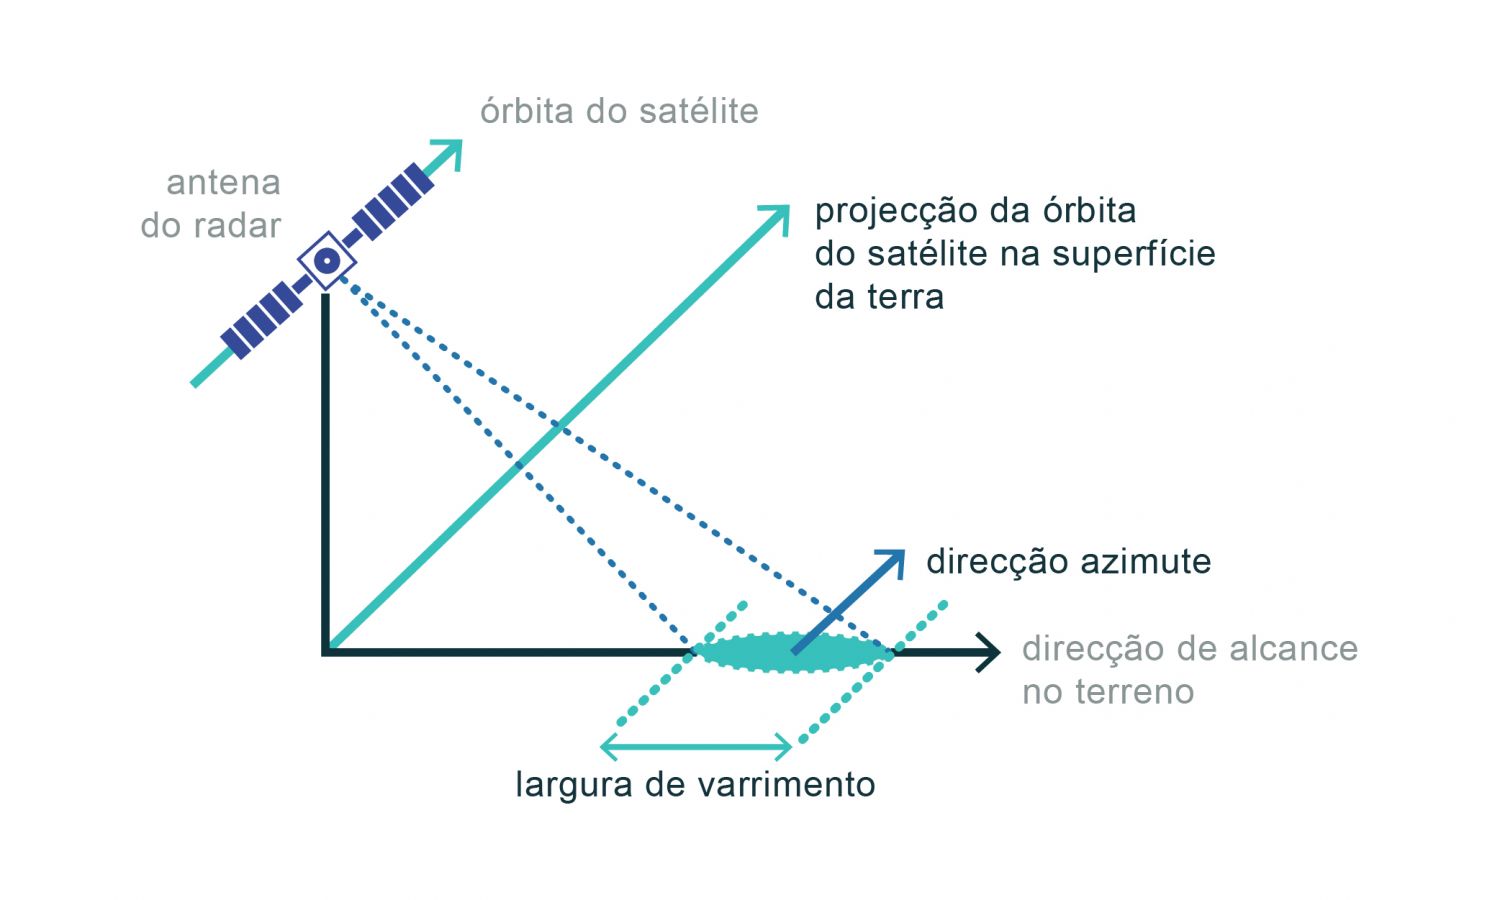 Geometria de um sistema de radar de imagem. O Radar de Abertura Sintética (SAR) possui uma antena retangular com dimensões típicas de 10 m por 1 m em que o seu comprimento está alinhado com a direção de voo do satélite, a chamada direção de azimute. O radar emite pulsos eletromagnéticos lateralmente, na direção perpendicular à linha de voo, a chamada direção de alcance. Os pulsos são emitidos a um ângulo definido como o ângulo de incidência, que pode variar entre os 15° e os 60°. Este ângulo irá definir a área da superfície iluminada, ou por outra palavras, irá definir a pegada do sensor (zona a verde na figura) que aumenta em largura com o ângulo de incidência. A utilização deste ficheiro é regulada nos termos da licença Creative Commons Attribution 4.0 (CC BY-NC-ND 4.0, https://creativecommons.org/licenses/by-nc-nd/4.0/)